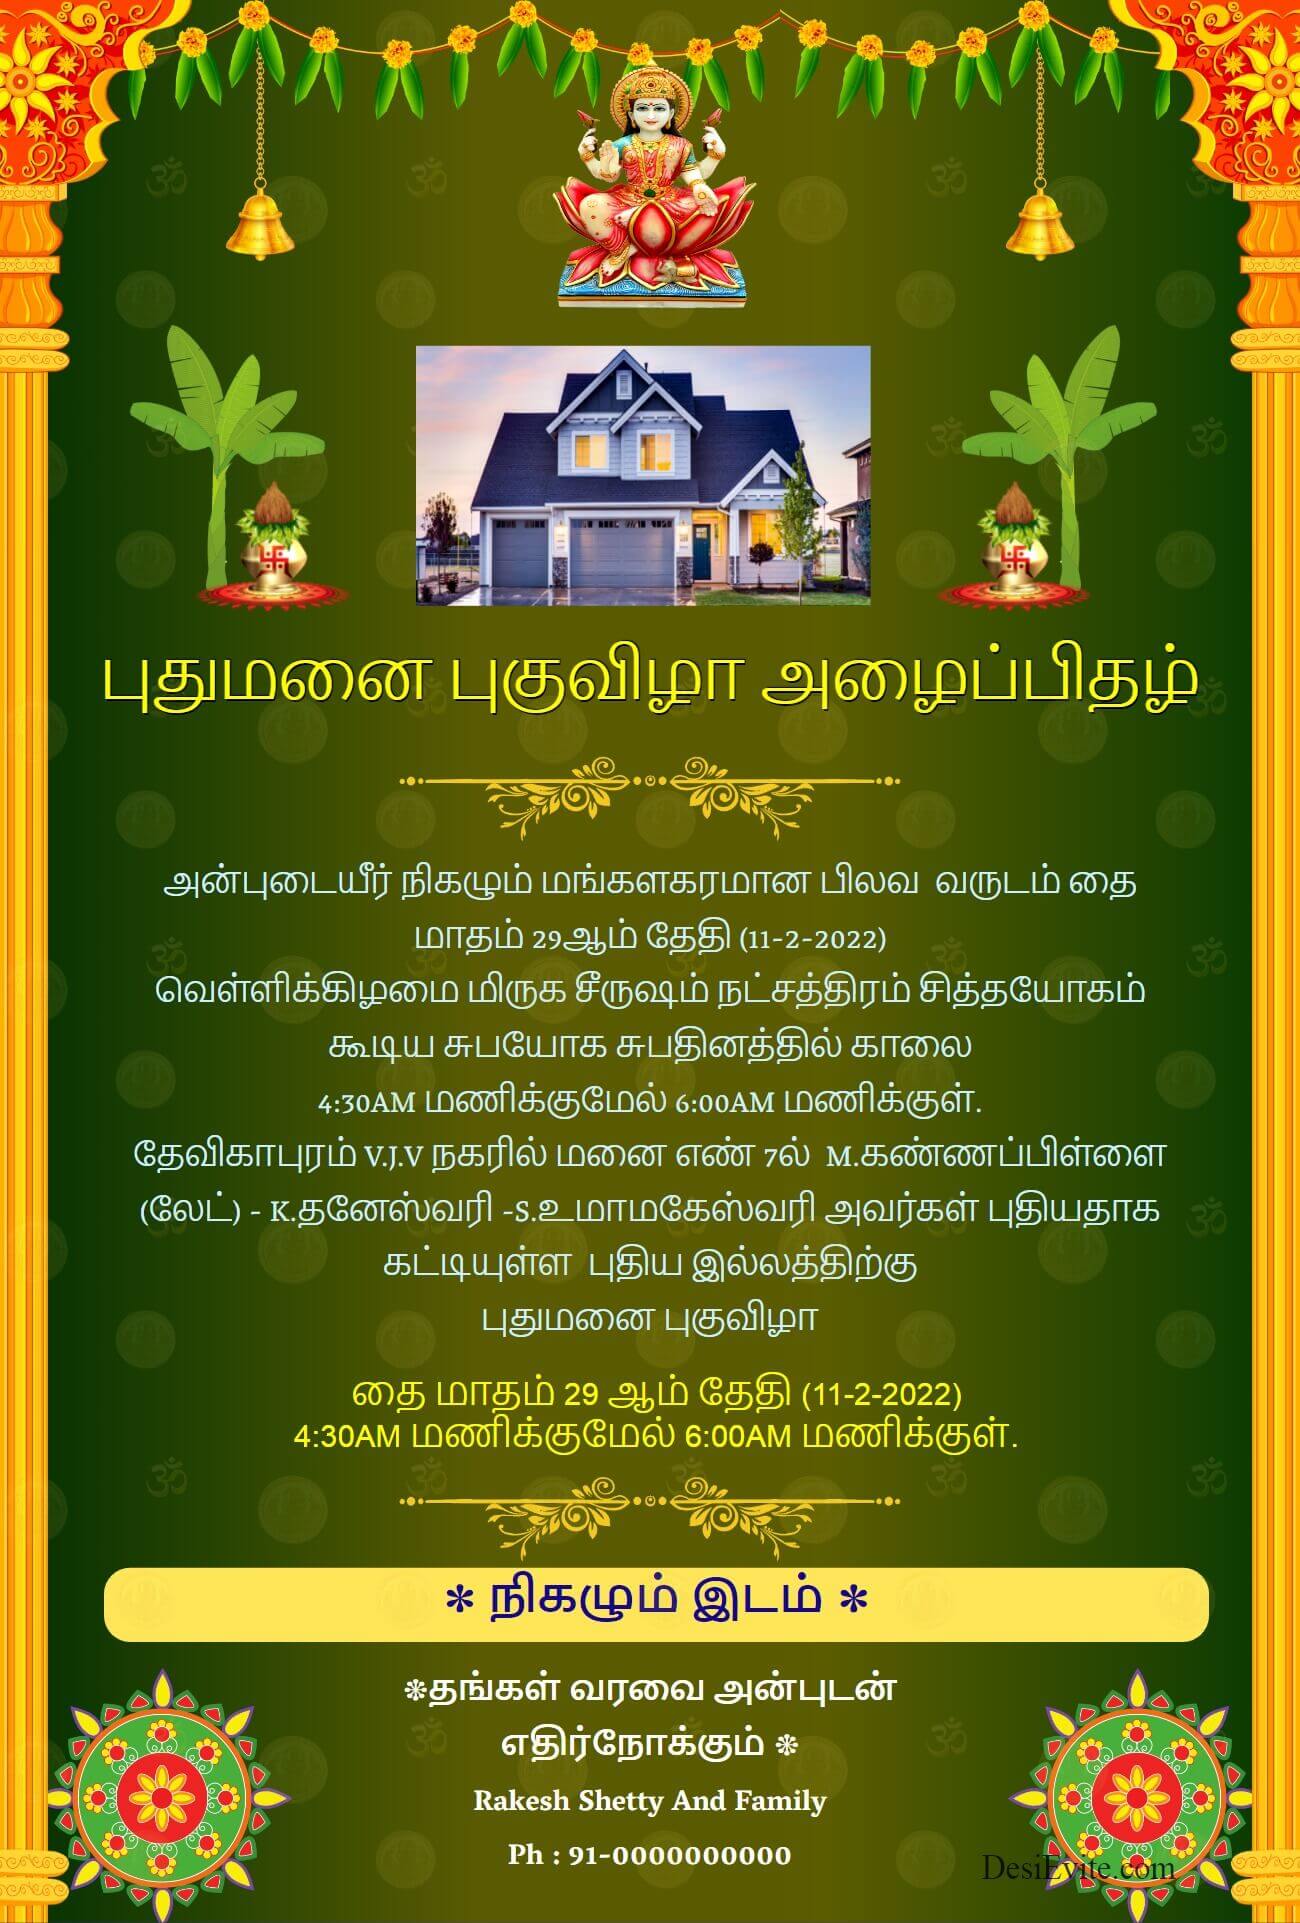 varlaxmi gruhpravesh invitation card tamil 148 